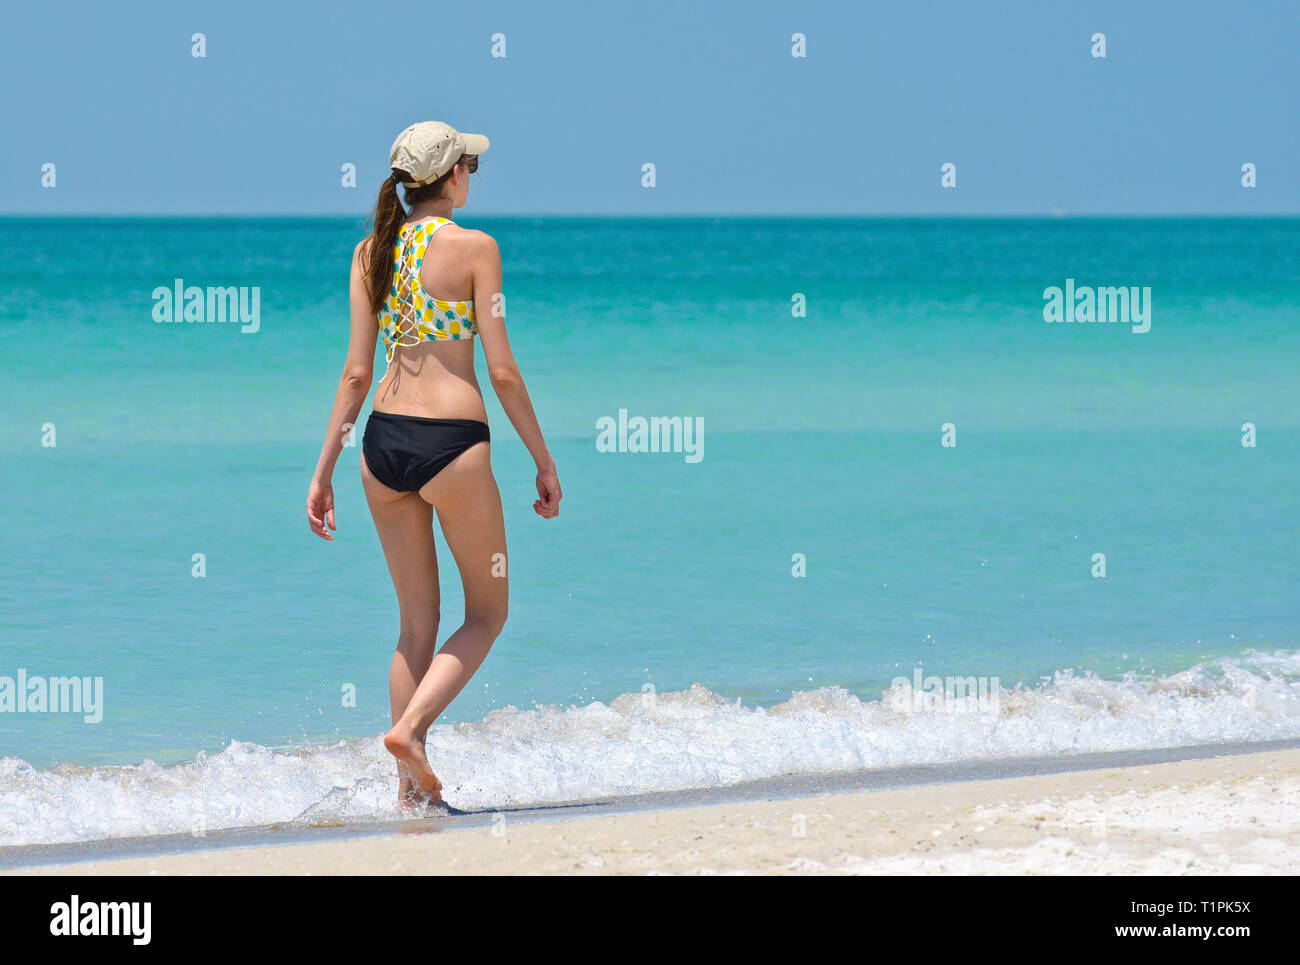 Piuttosto giovani donne in vacanza facendo una piacevole passeggiata e godersi una bella giornata di sole sulla spiaggia. Foto Stock